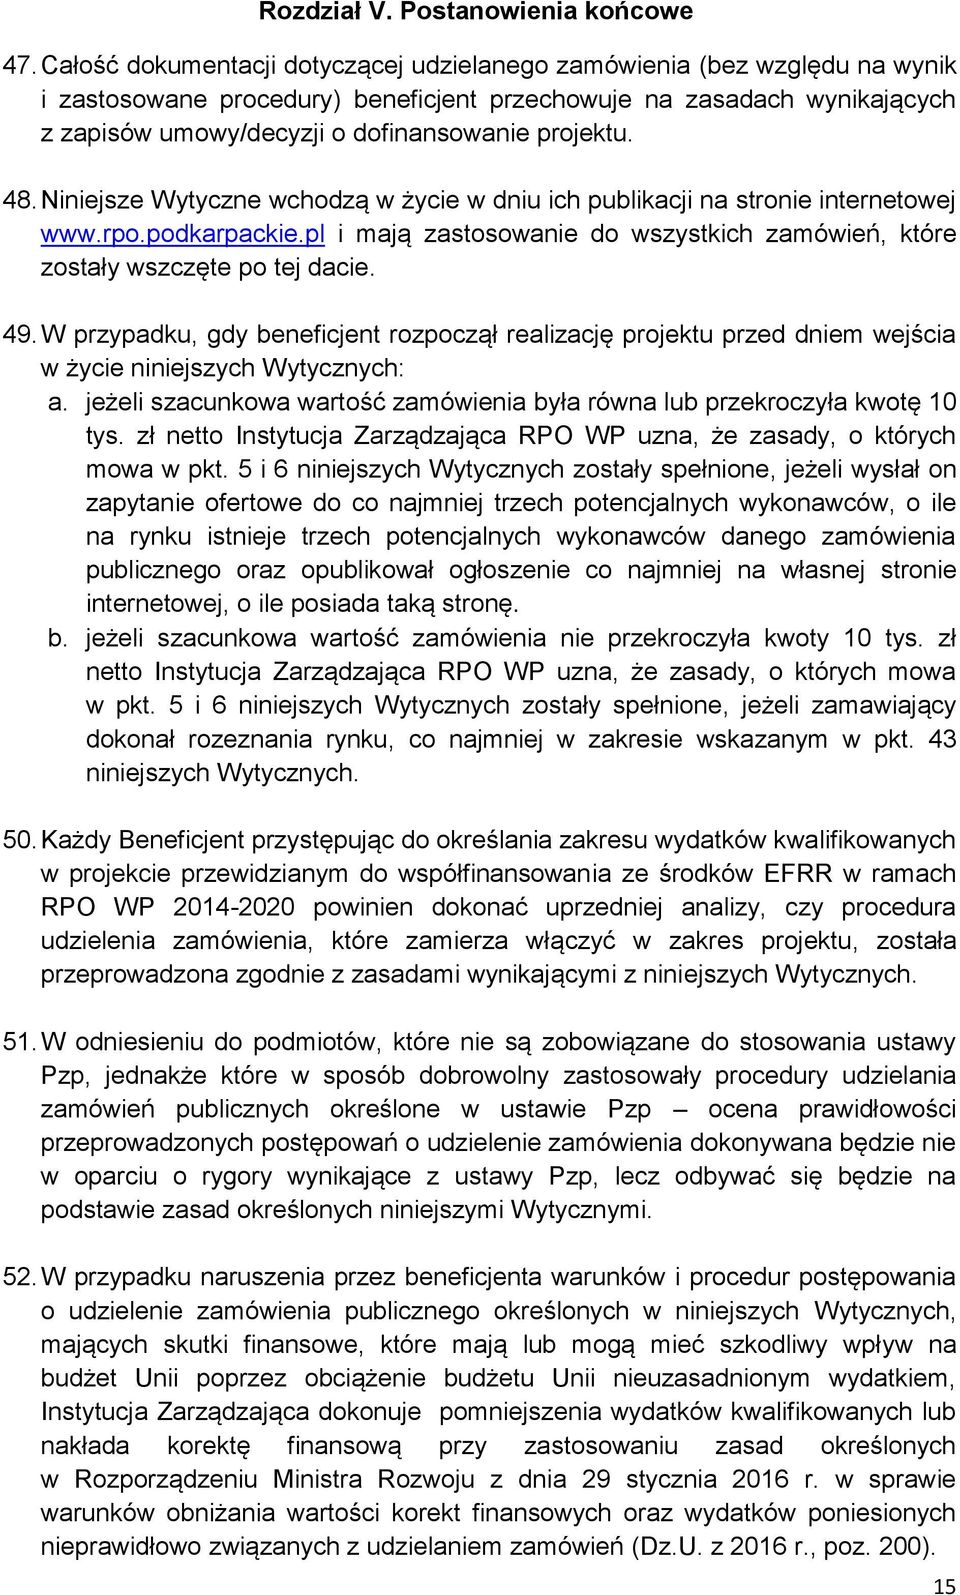 48. Niniejsze Wytyczne wchodzą w życie w dniu ich publikacji na stronie internetowej www.rpo.podkarpackie.pl i mają zastosowanie do wszystkich zamówień, które zostały wszczęte po tej dacie. 49.